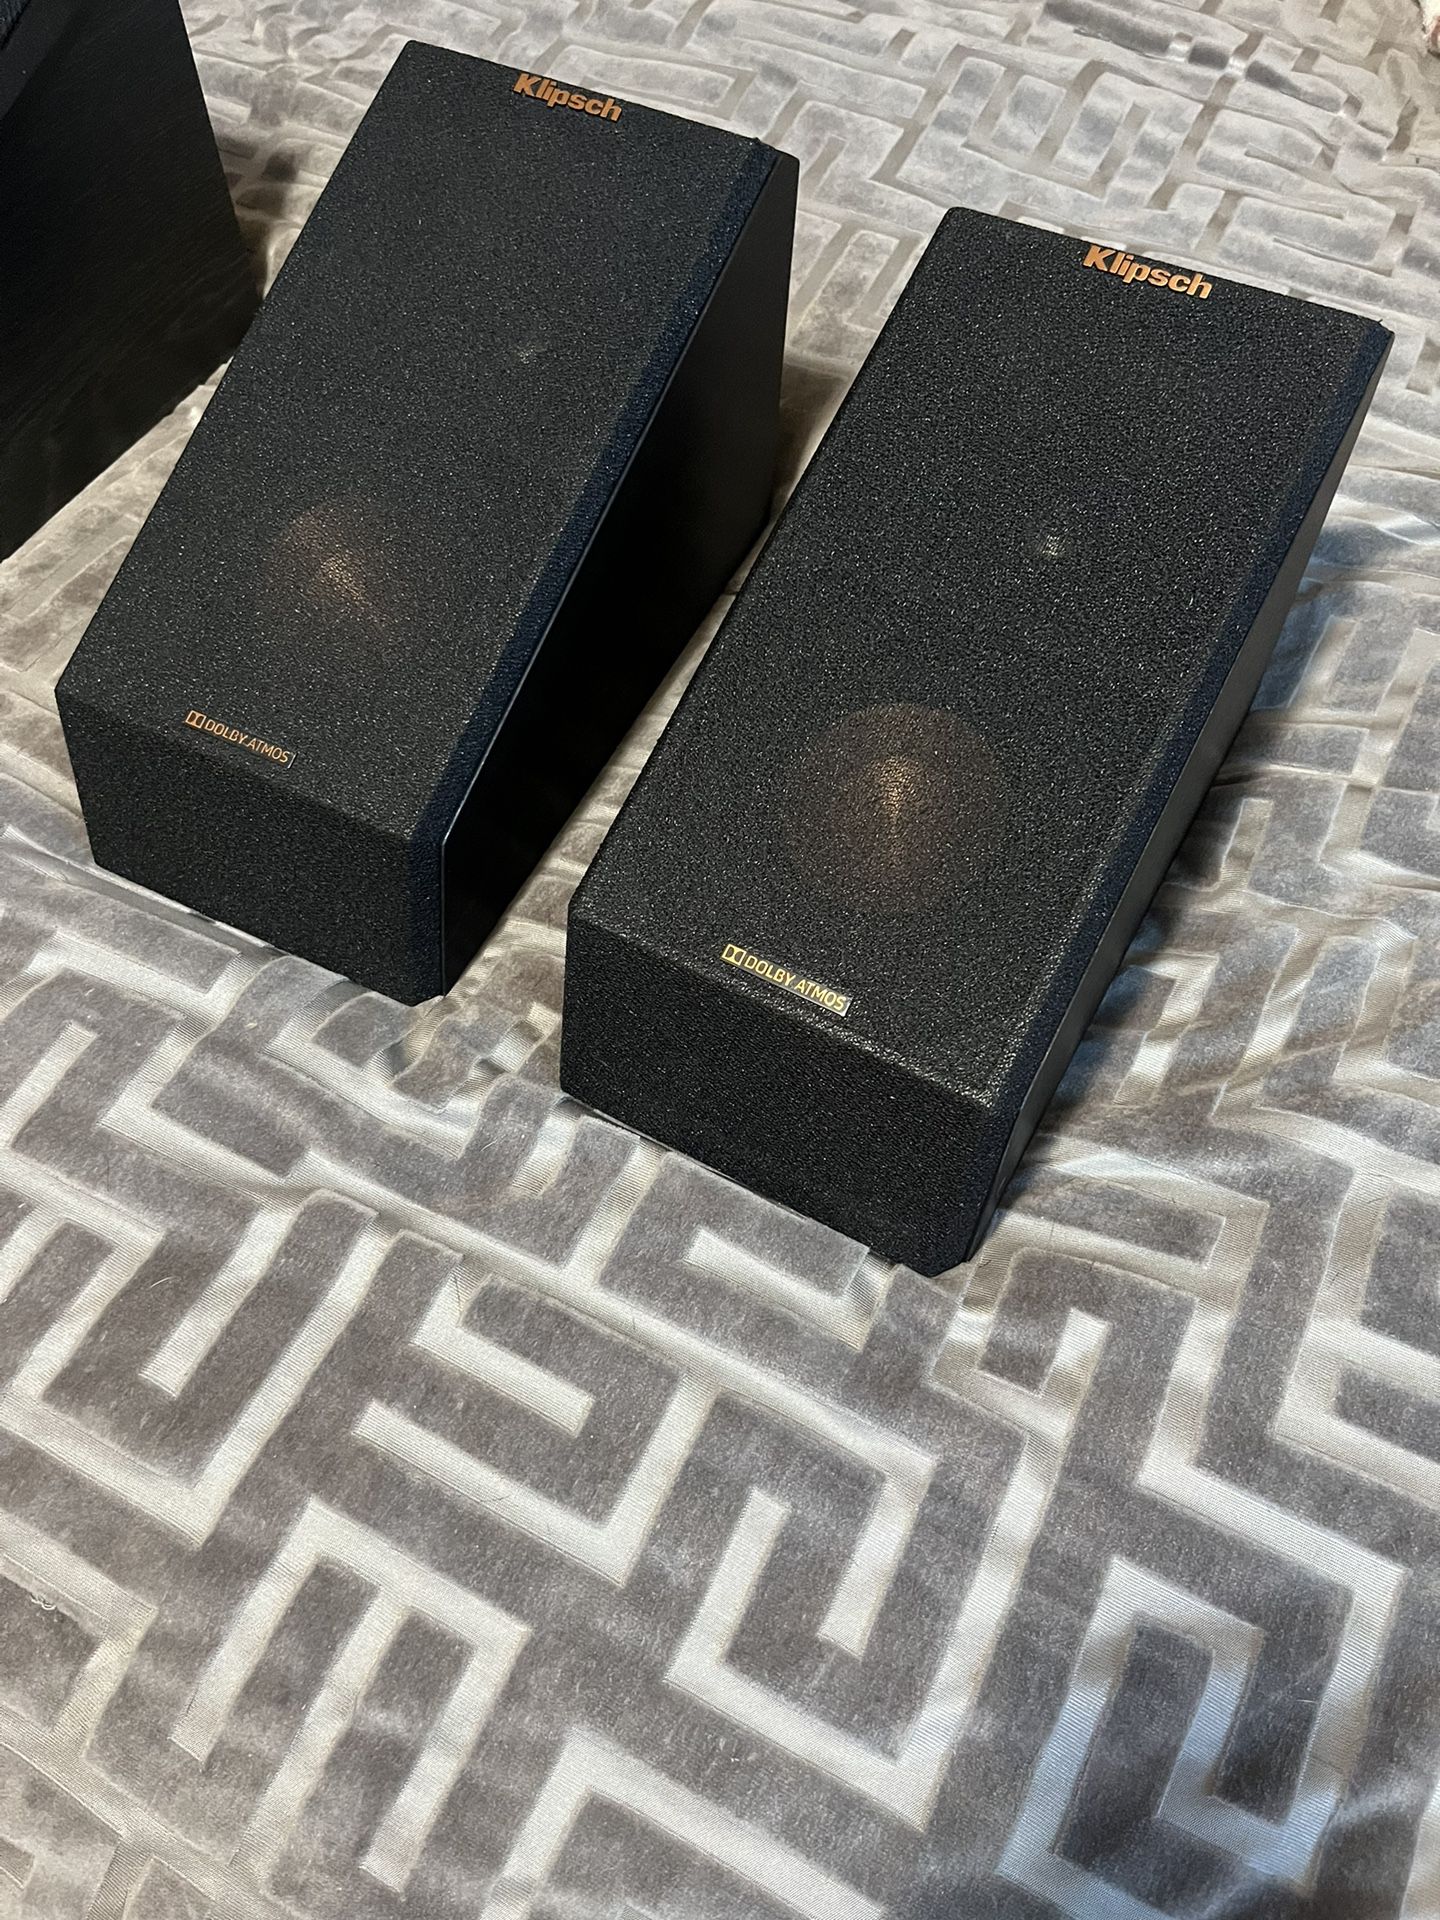 Dolby Atmos Klipsch Speakers. 2 Pair